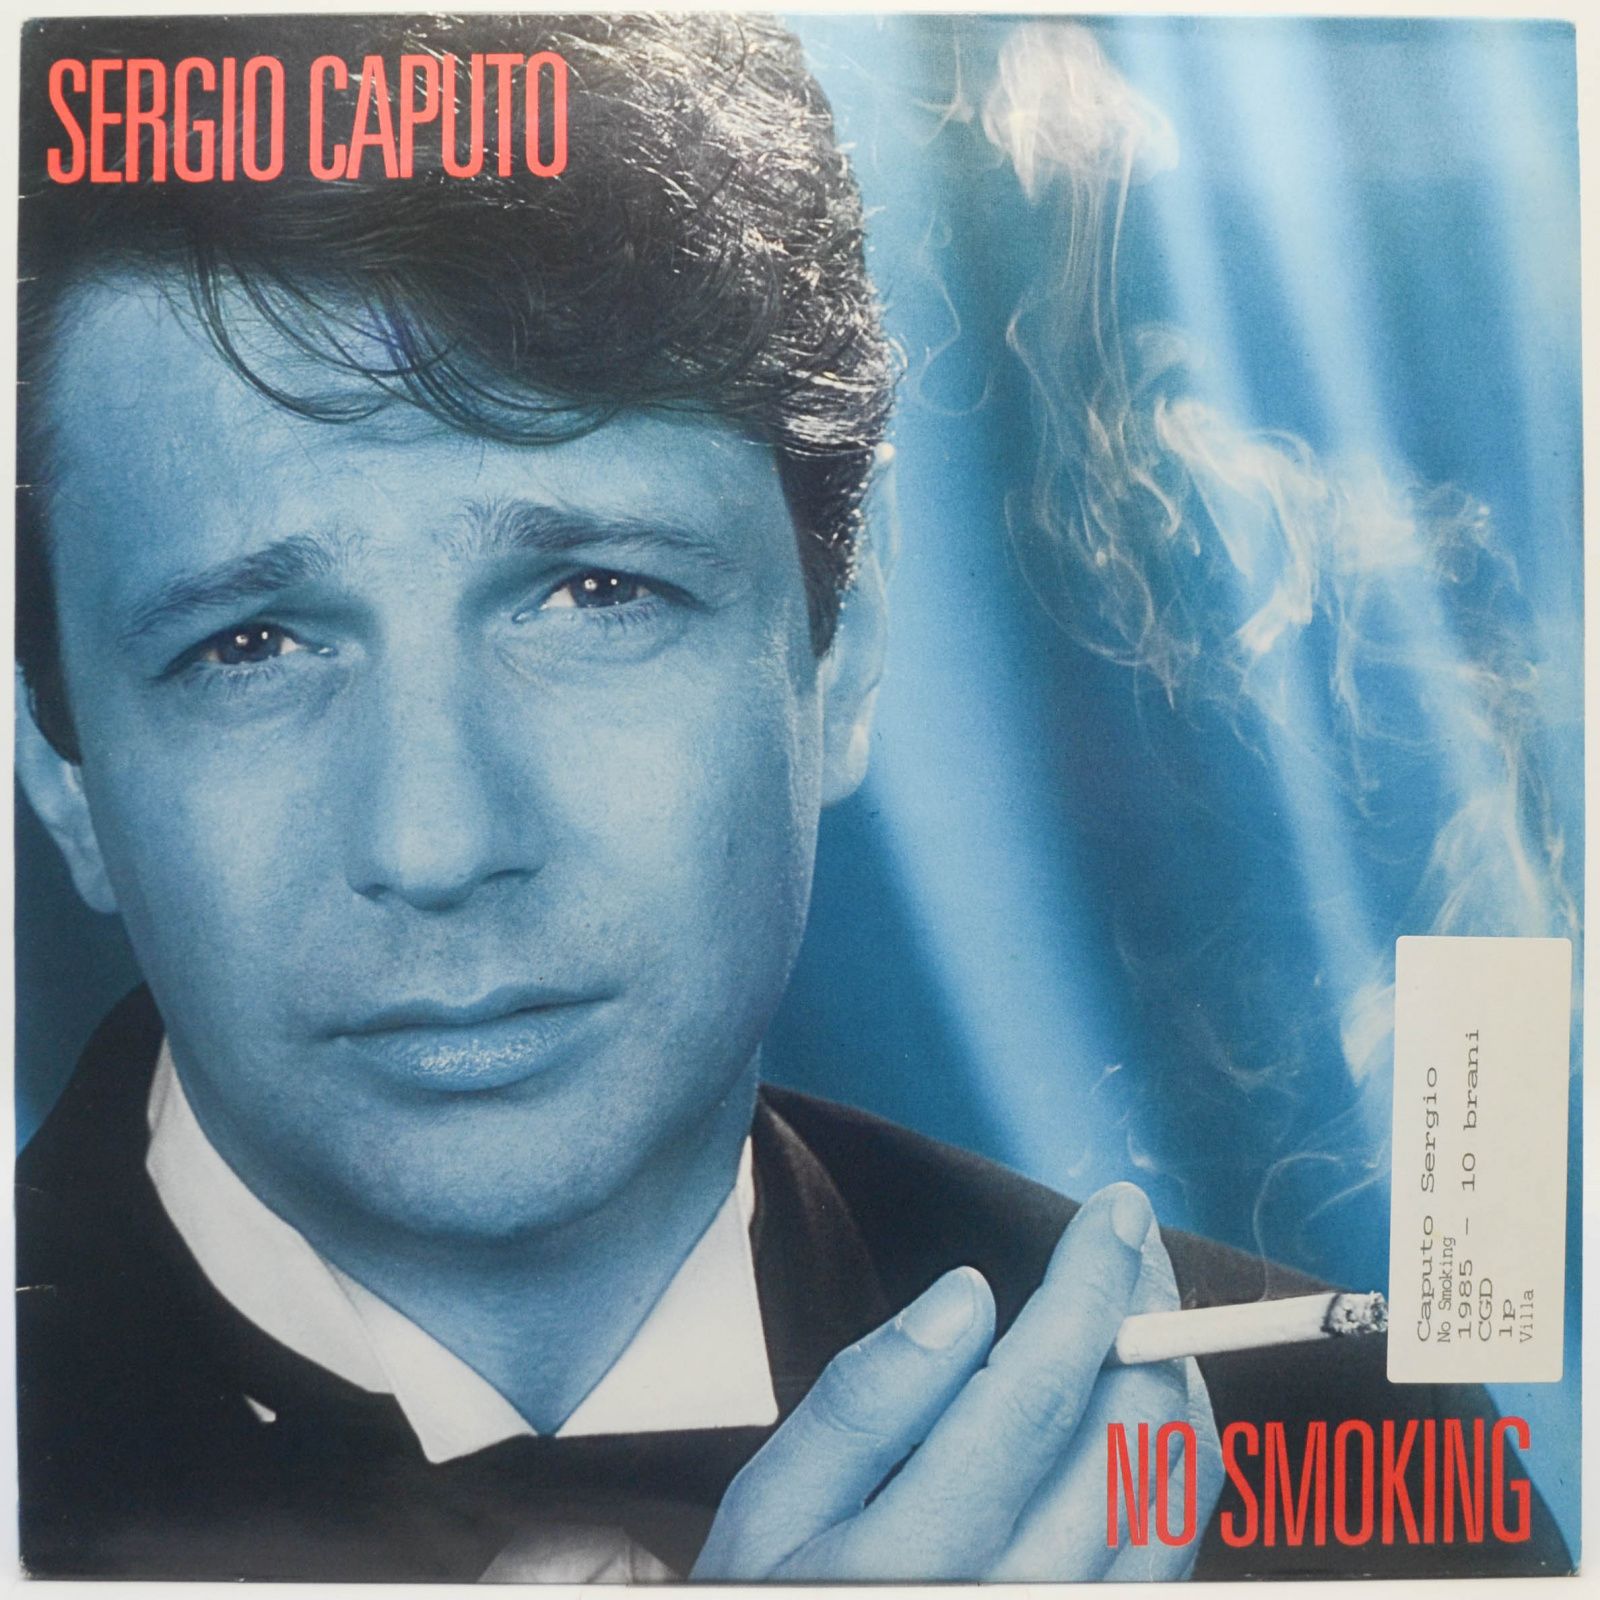 No Smoking, 1985